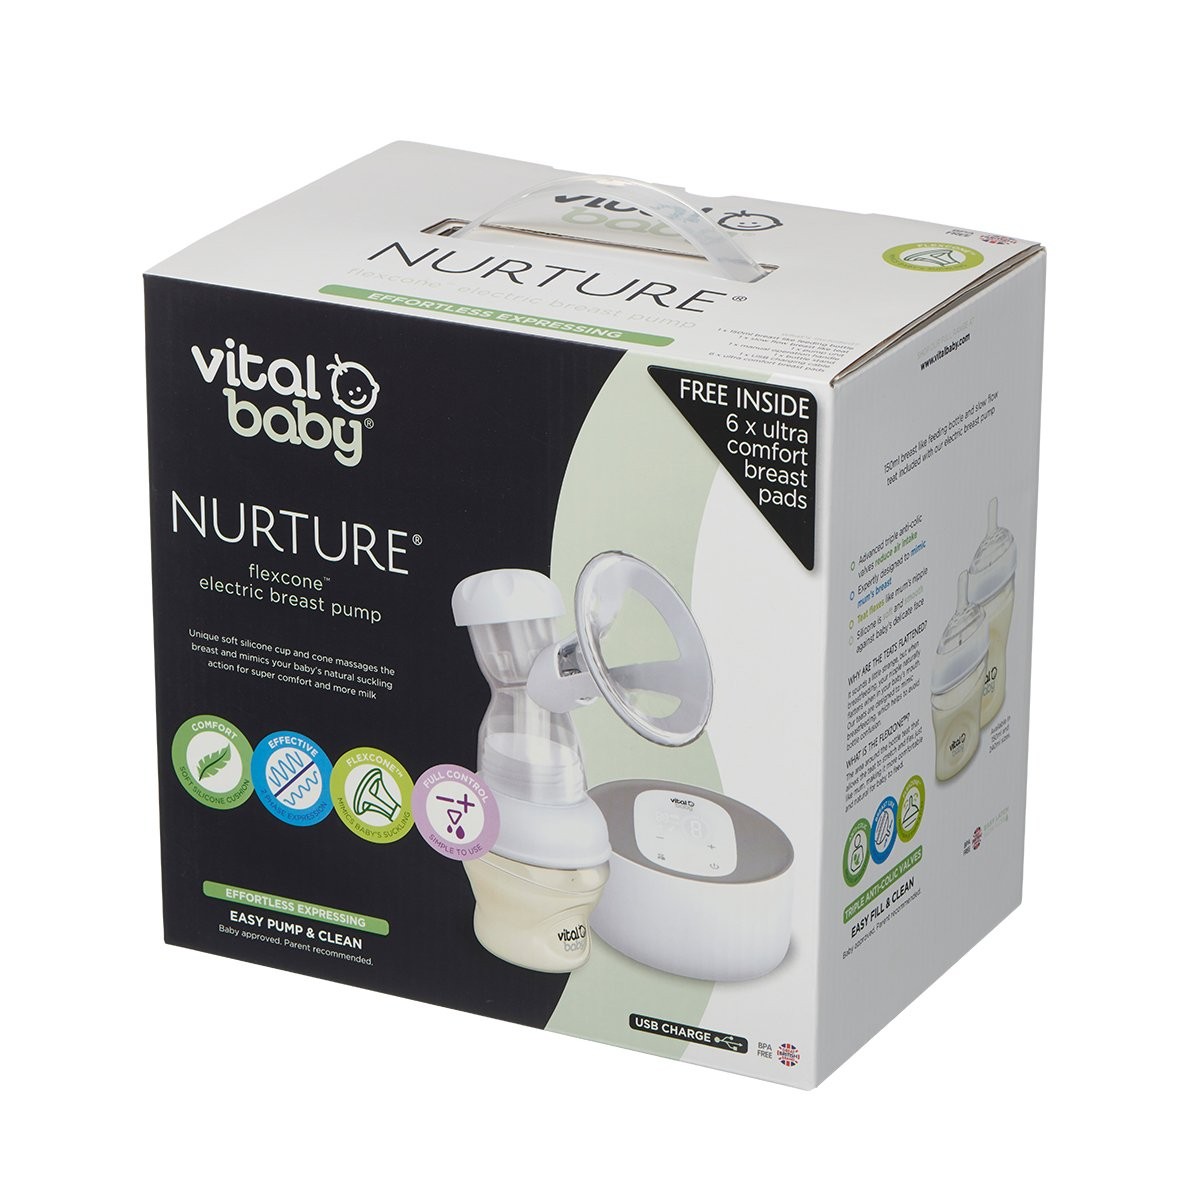 Vital Baby Nurture Electric Breast Pump - 287963